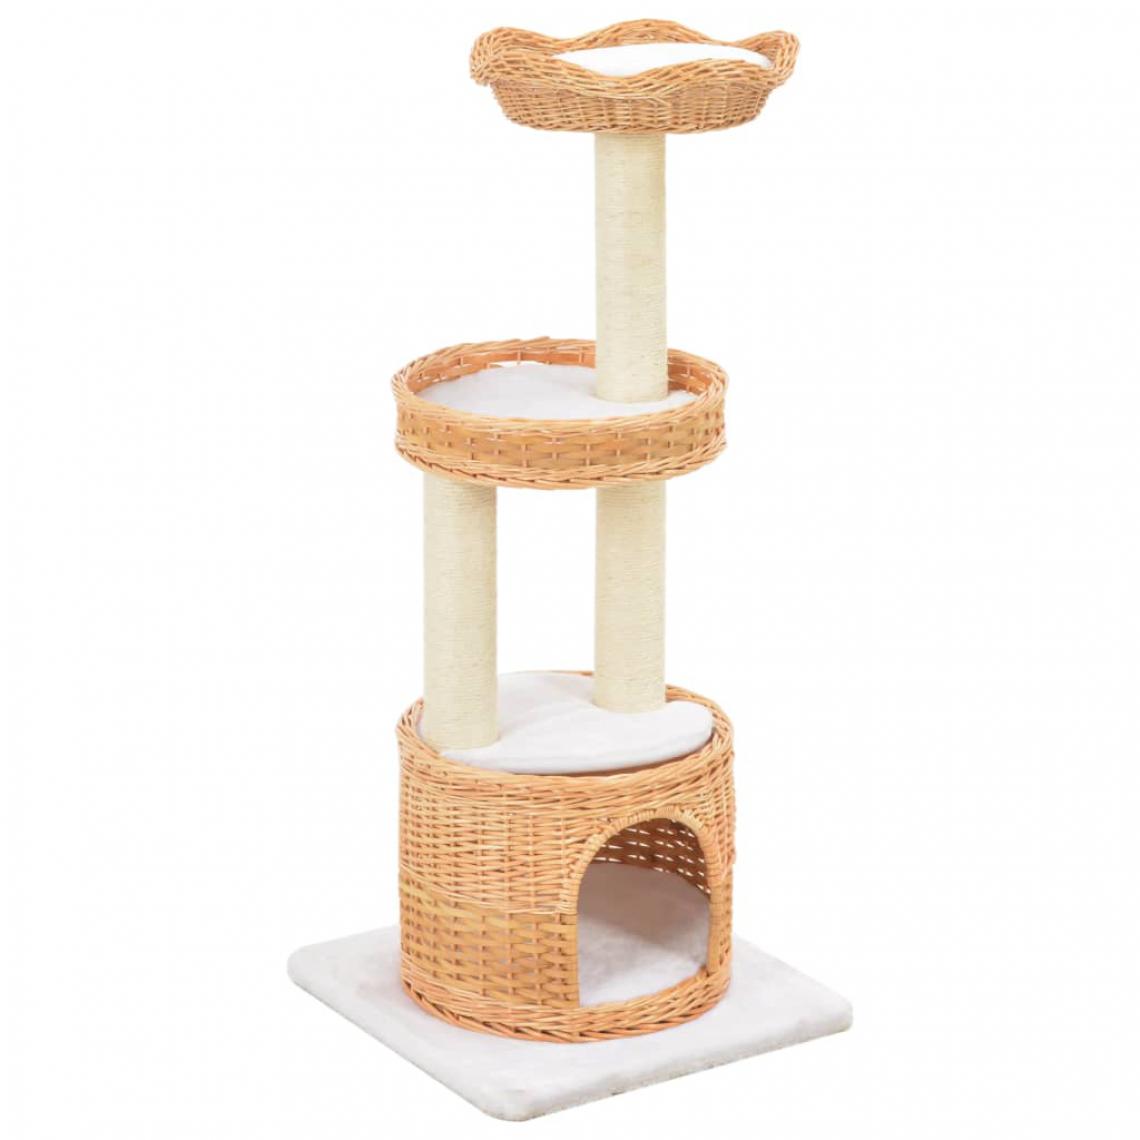 Helloshop26 - Arbre à chat griffoir grattoir niche jouet animaux peluché en sisal naturel bois de saule 3702234 - Arbre à chat